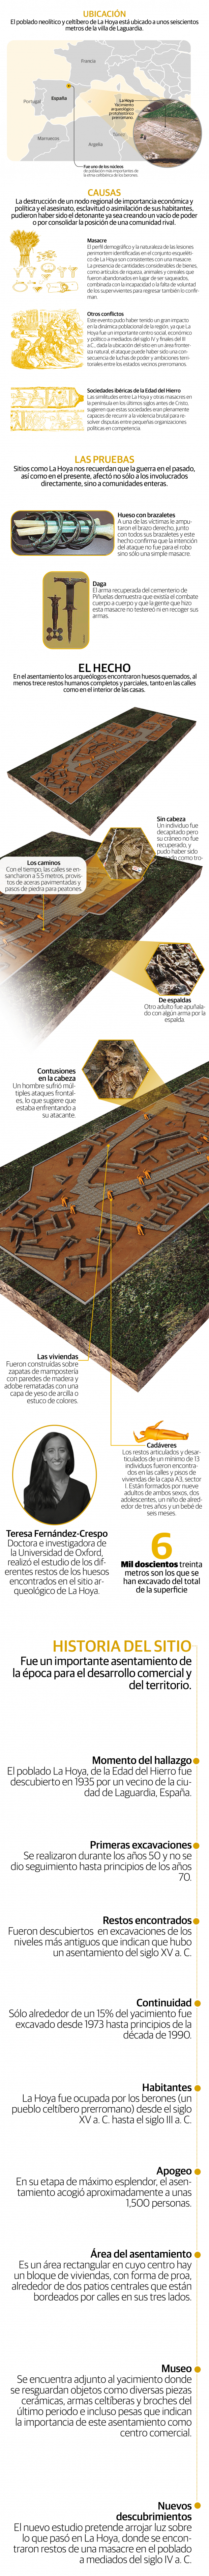 El misterio desvelado de La Hoya, una gran ciudad prehistórica